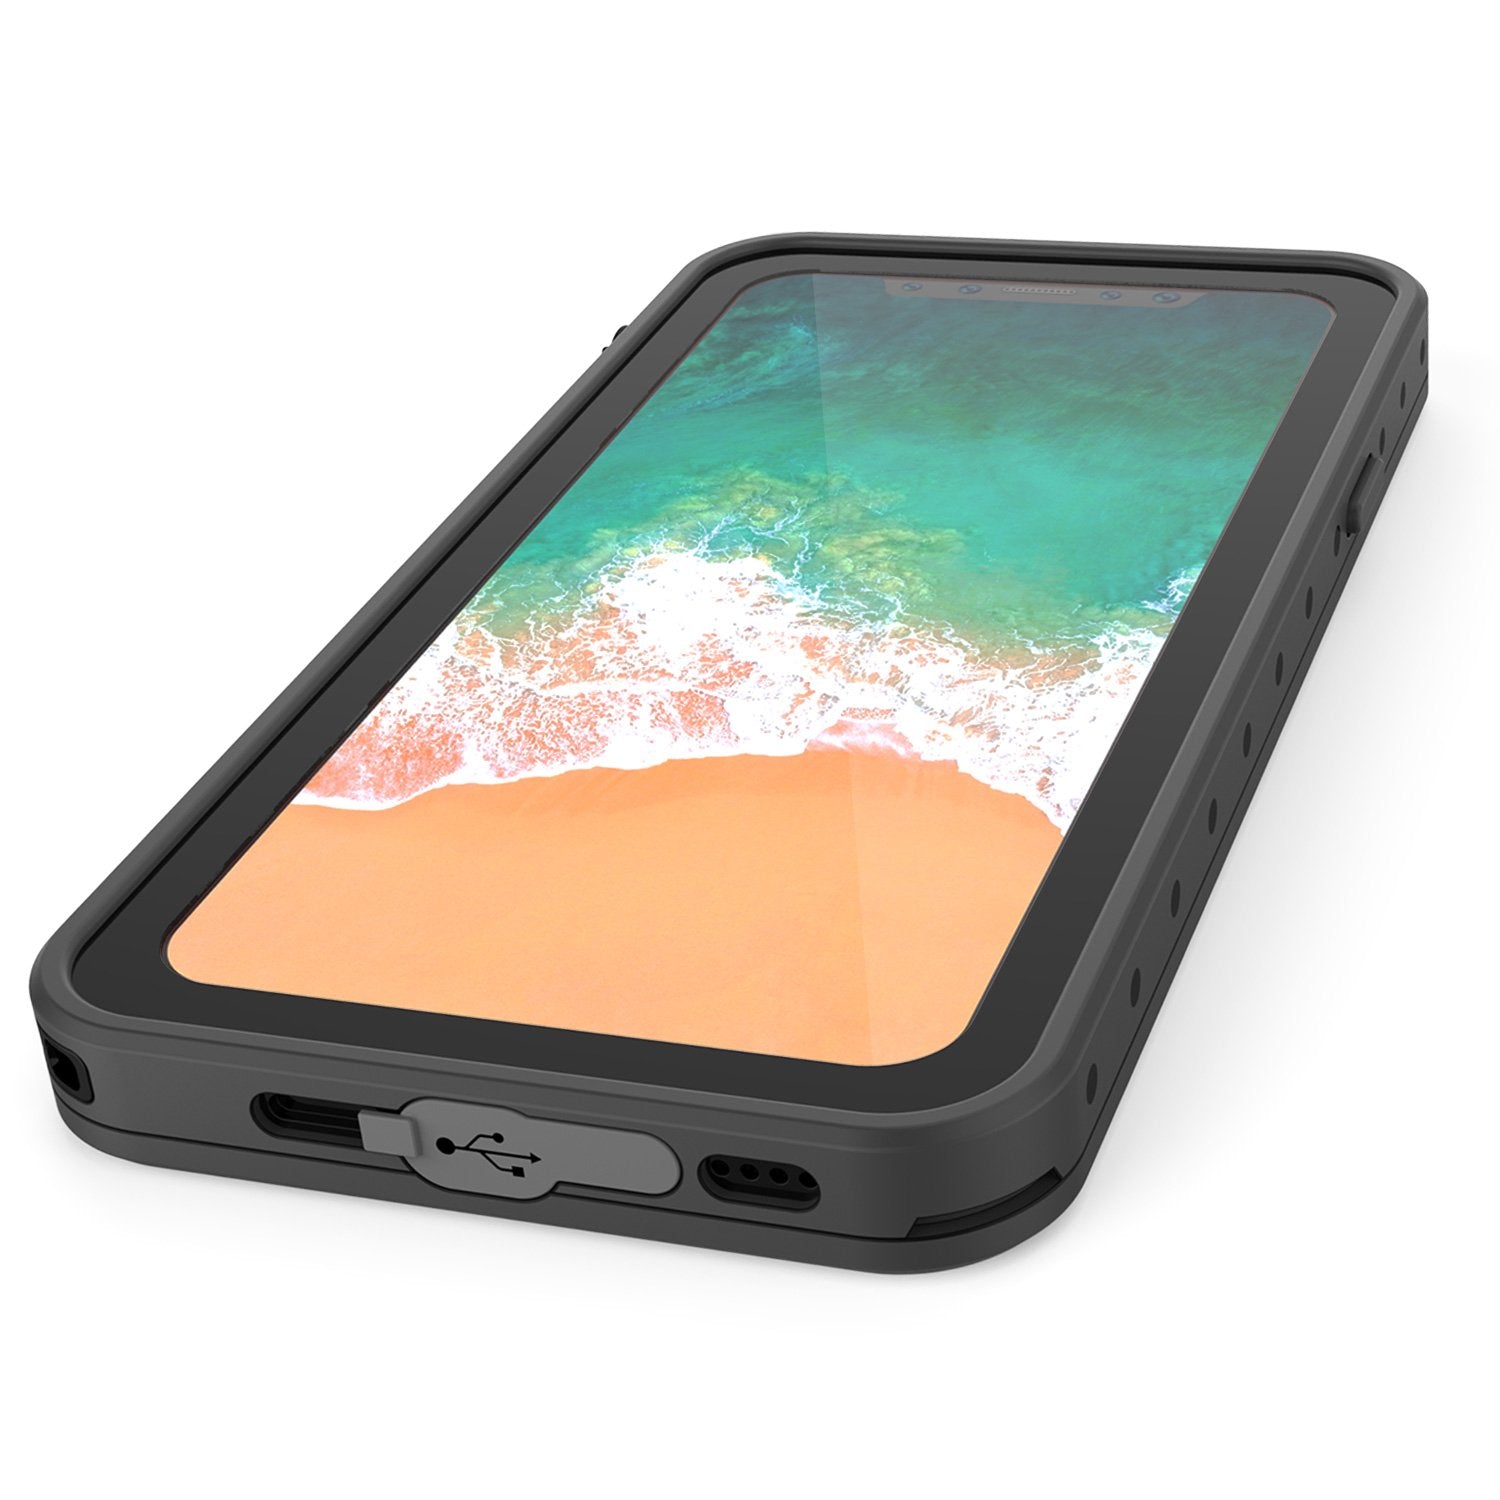 iPhone X Waterproof IP68 Case, Punkcase [Clear] [StudStar Series] [Slim Fit] [Dirtproof]